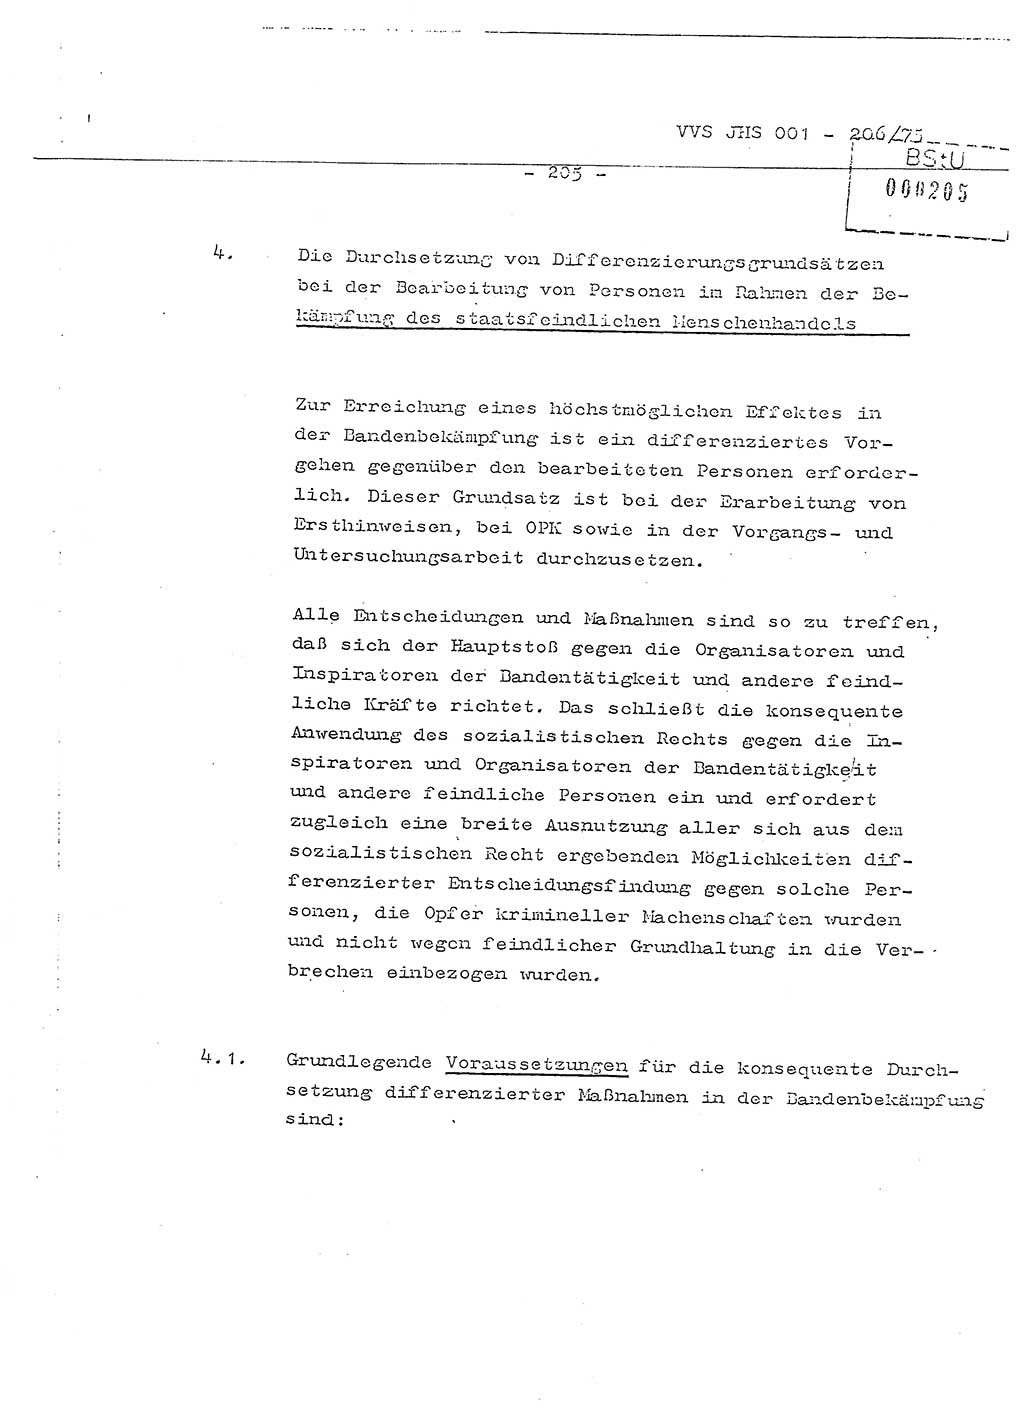 Dissertation Generalmajor Manfred Hummitzsch (Leiter der BV Leipzig), Generalmajor Heinz Fiedler (HA Ⅵ), Oberst Rolf Fister (HA Ⅸ), Ministerium für Staatssicherheit (MfS) [Deutsche Demokratische Republik (DDR)], Juristische Hochschule (JHS), Vertrauliche Verschlußsache (VVS) 001-206/75, Potsdam 1975, Seite 205 (Diss. MfS DDR JHS VVS 001-206/75 1975, S. 205)